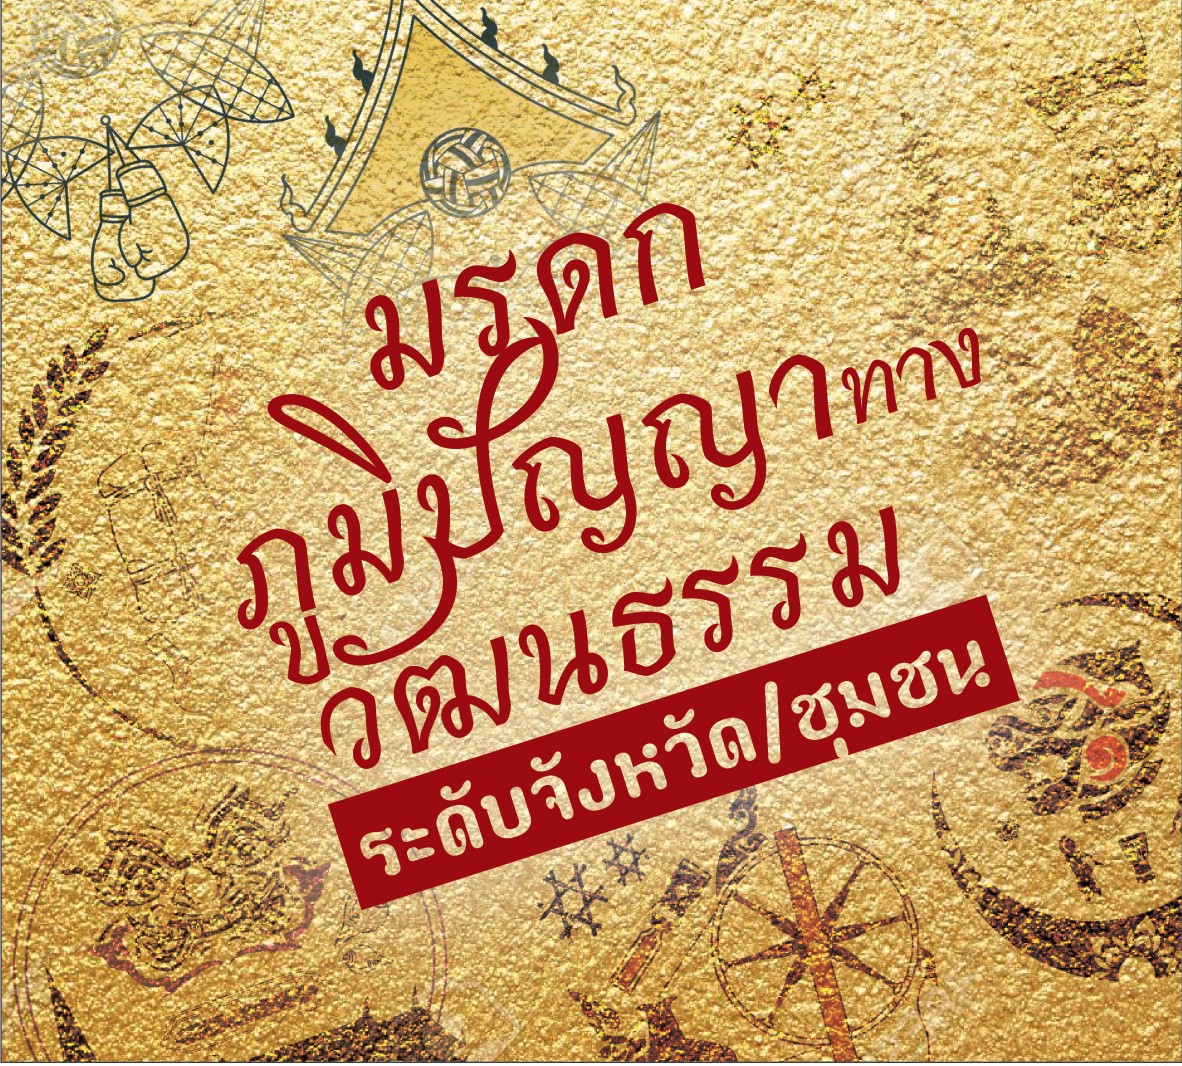 รายงานการวิจัยเพื่อรวบรวมและจัดเก็บข้อมูลมรดกภูมิปัญญาทางวัฒนธรรม: เพลงพื้นบ้านภาคกลาง  The Resesch Project Report of Collect and Storage of Intangible Cultural Heritage: Folk Song in Central Thailand